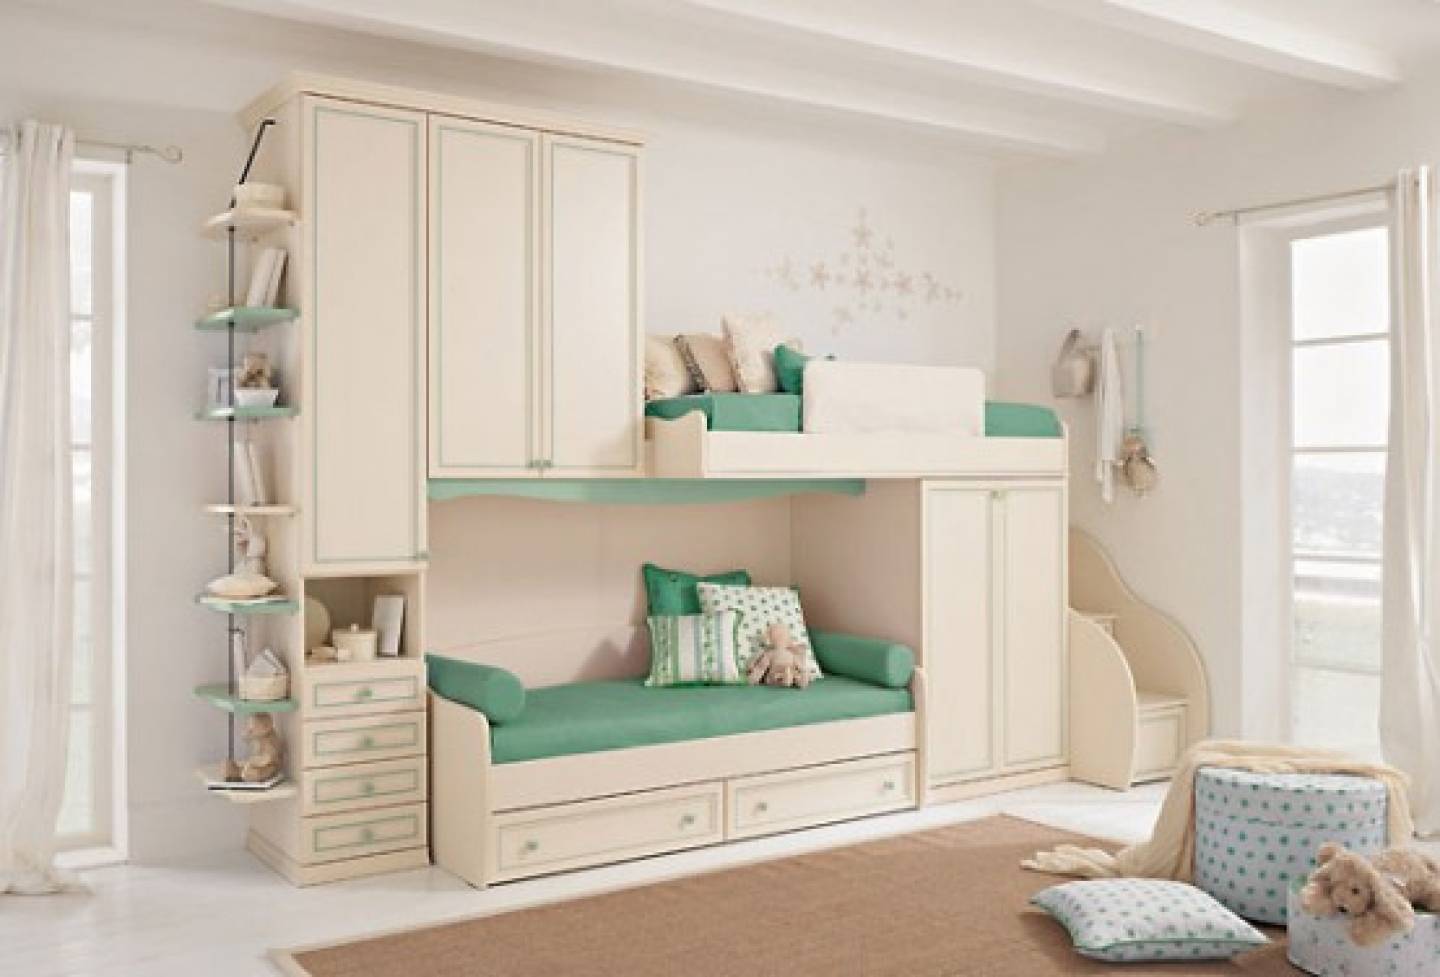 Советы по выбору модульной мебели для детской комнаты